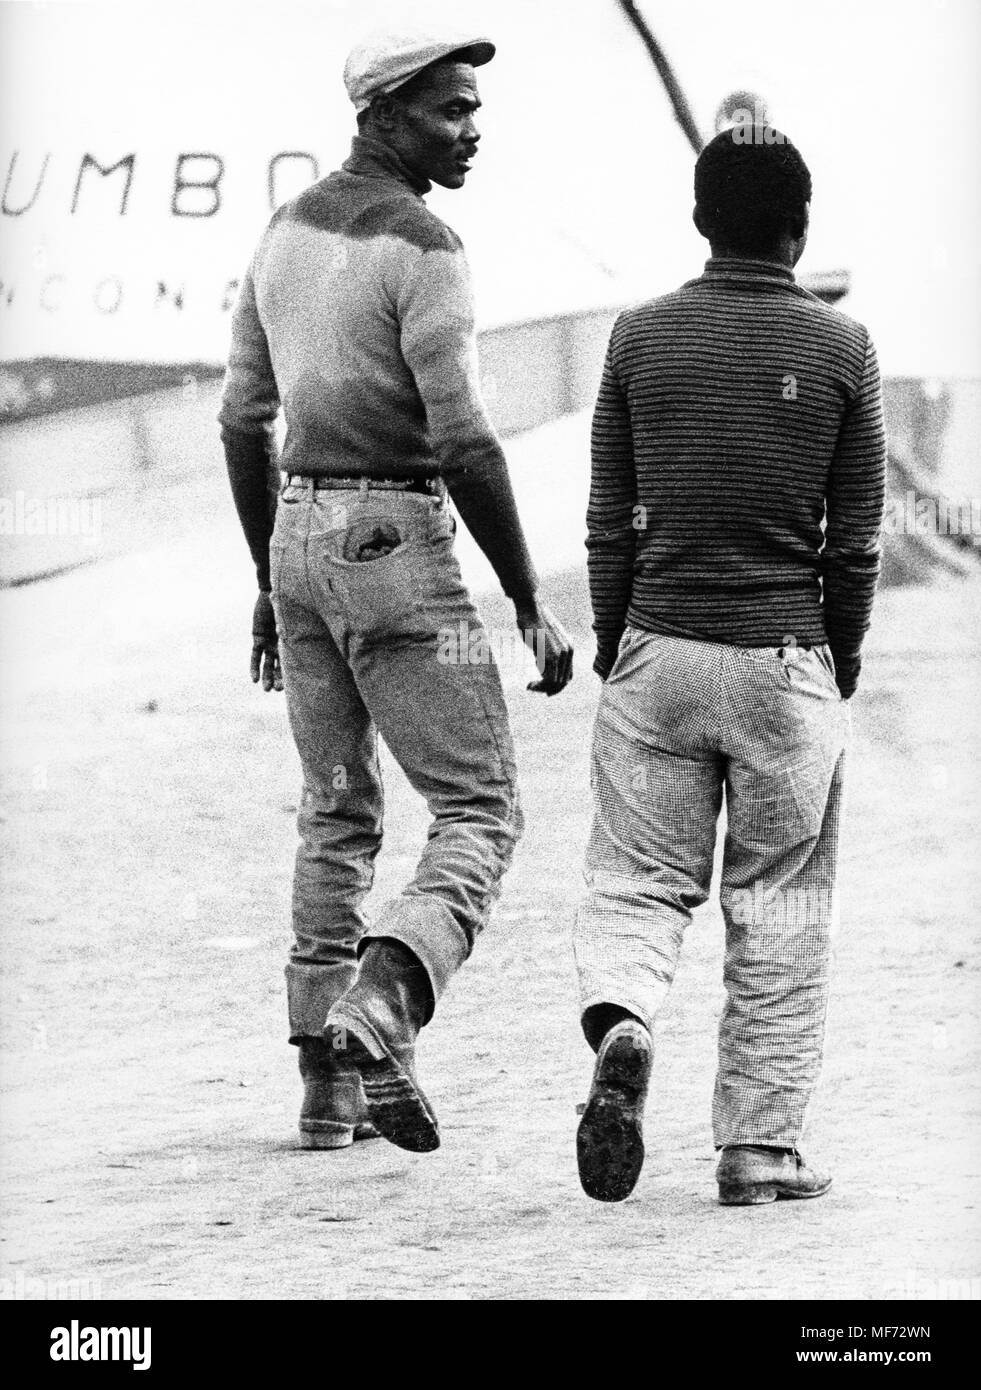 immigrants, mazara del vallo, sicily, 70s Stock Photo